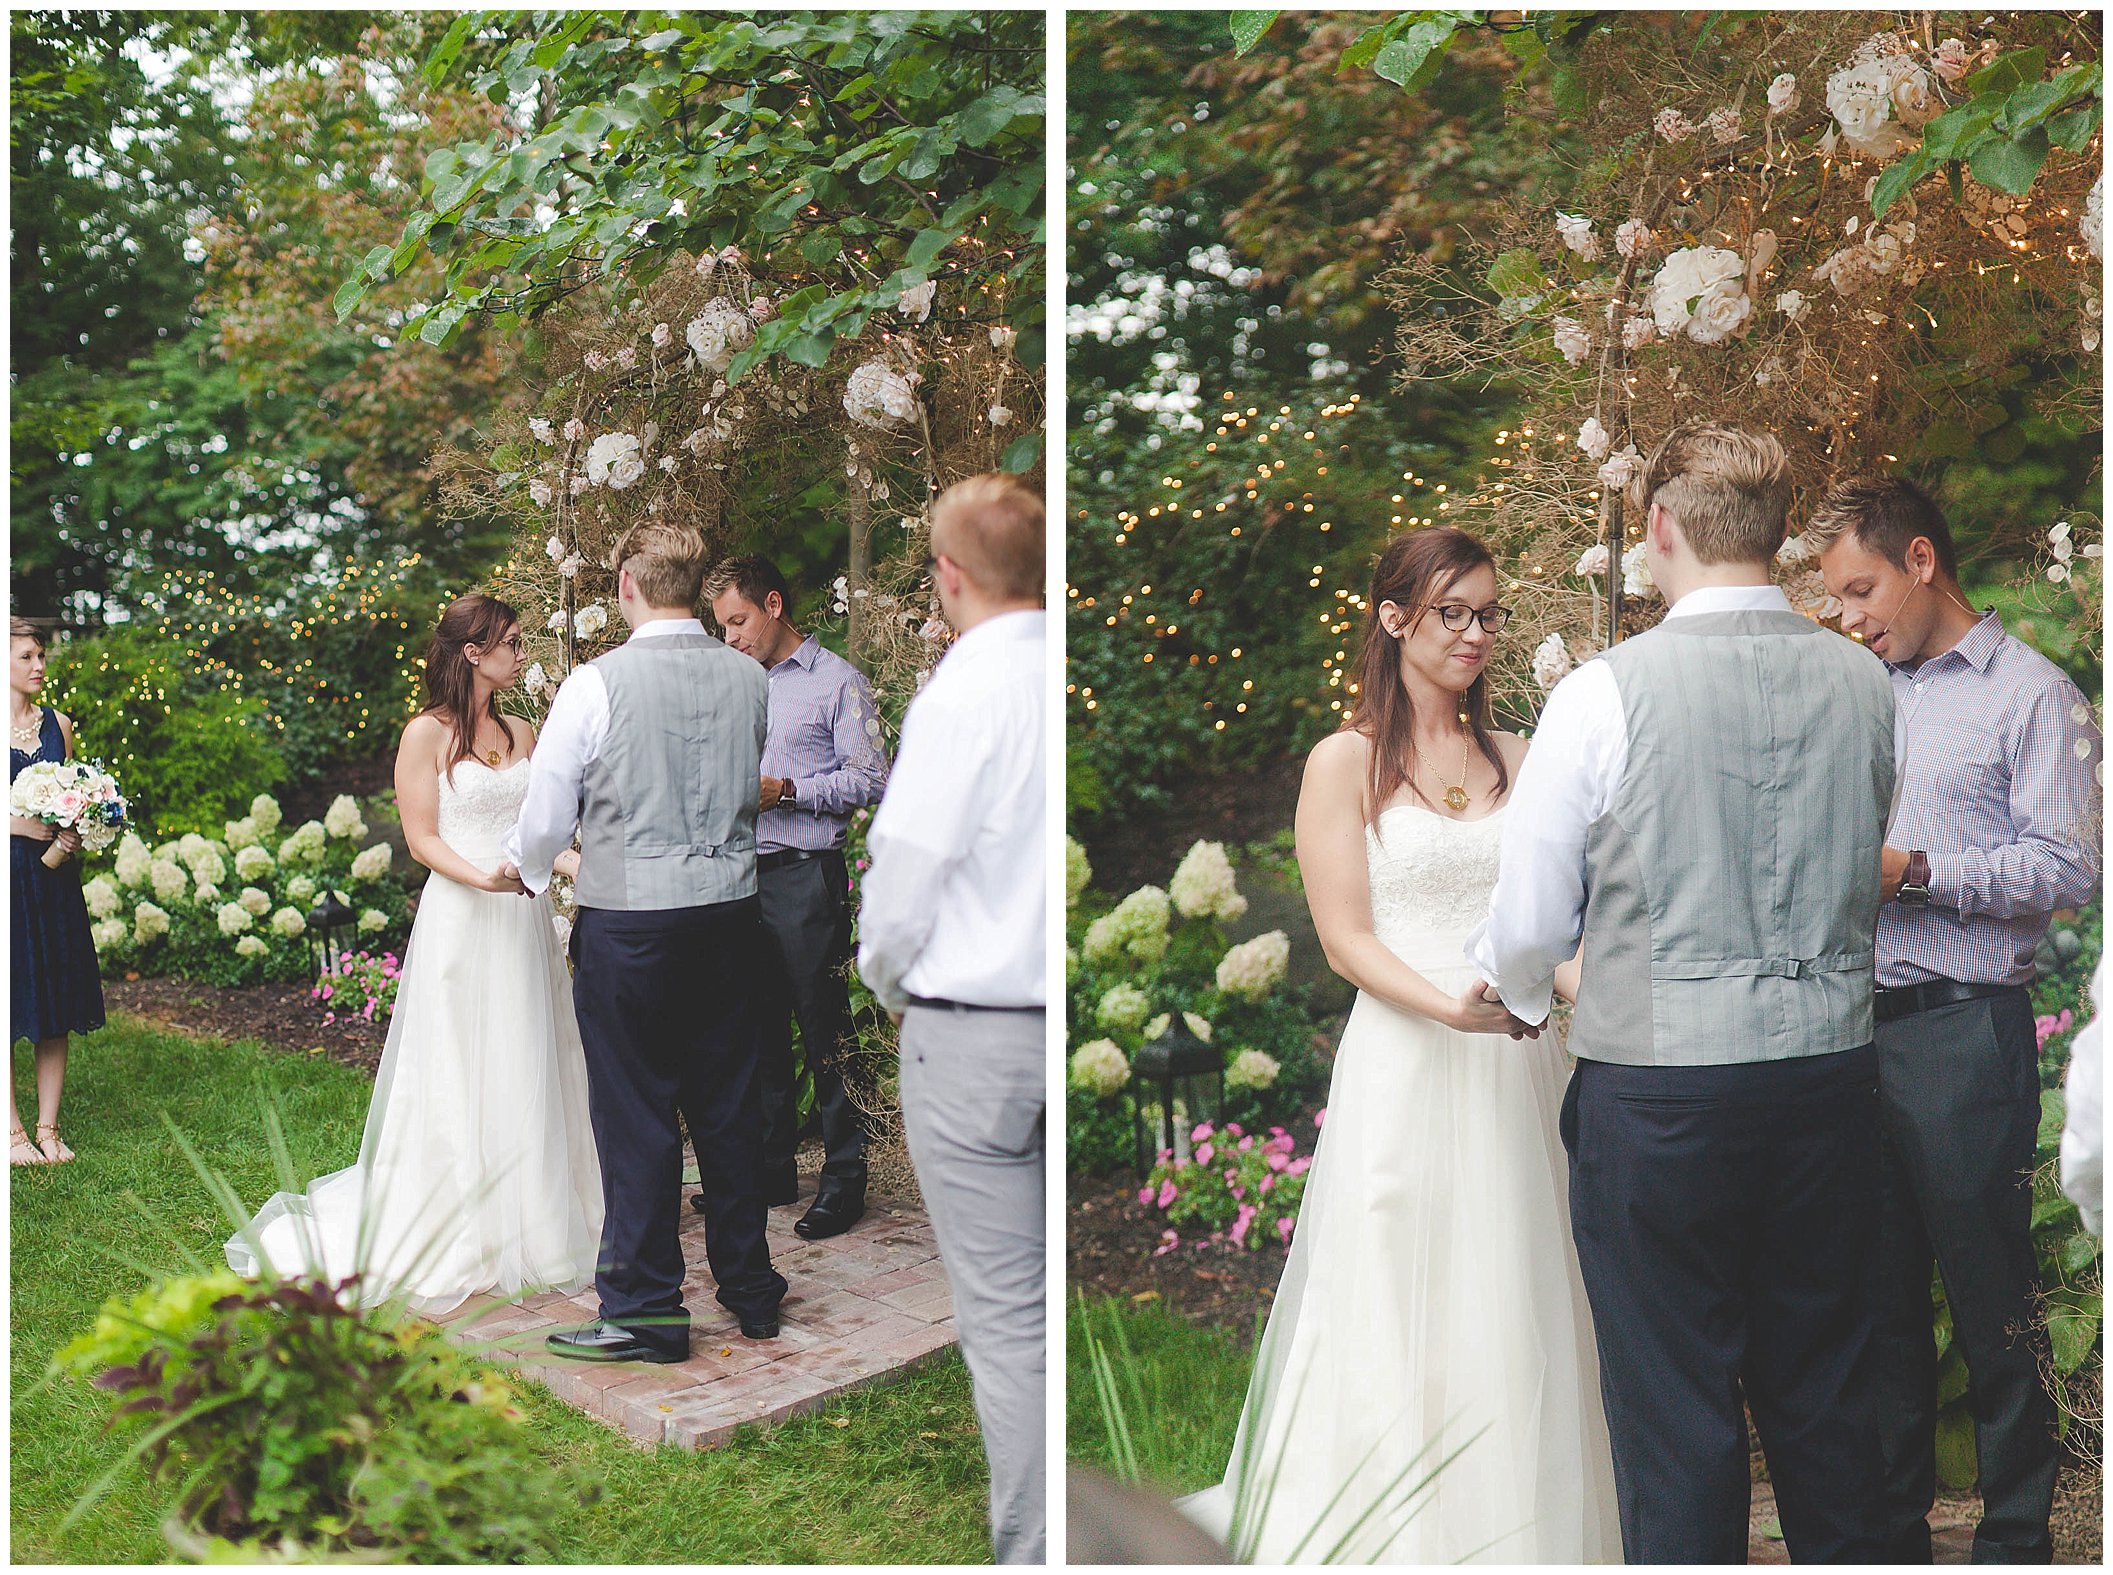 Stunning backyard wedding with twinkly lights, Fort Wayne Indiana Wedding Photographer_0014.jpg